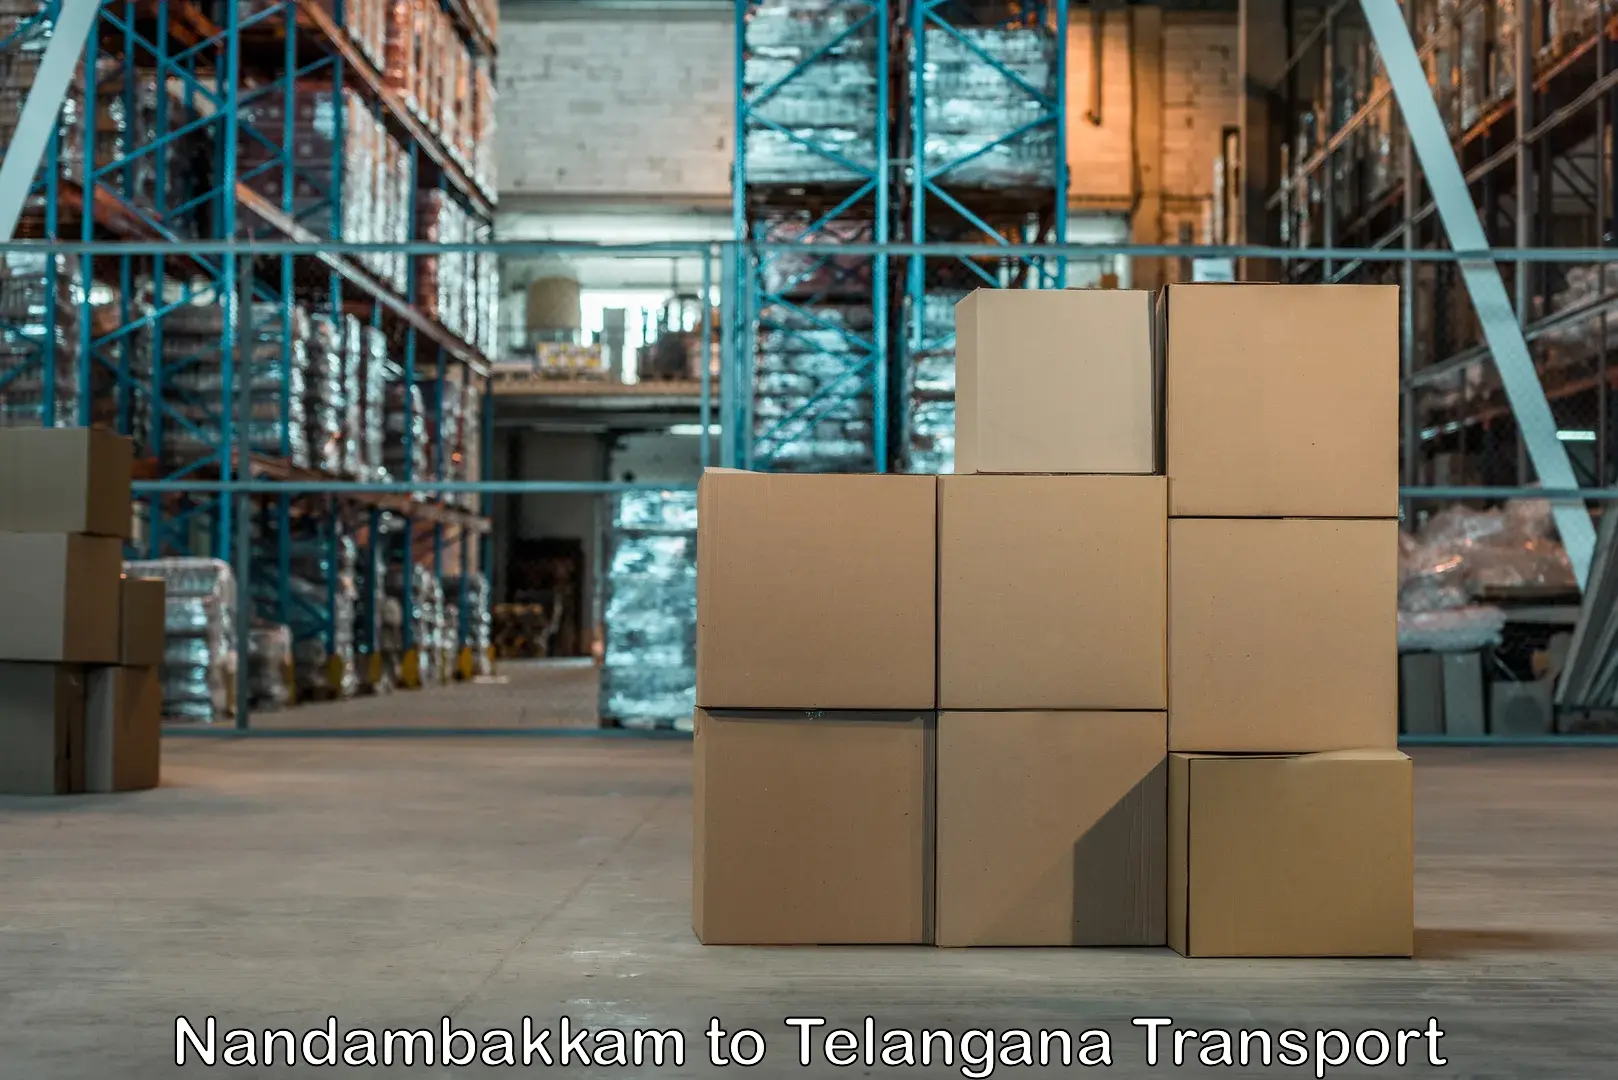 Commercial transport service Nandambakkam to Telangana